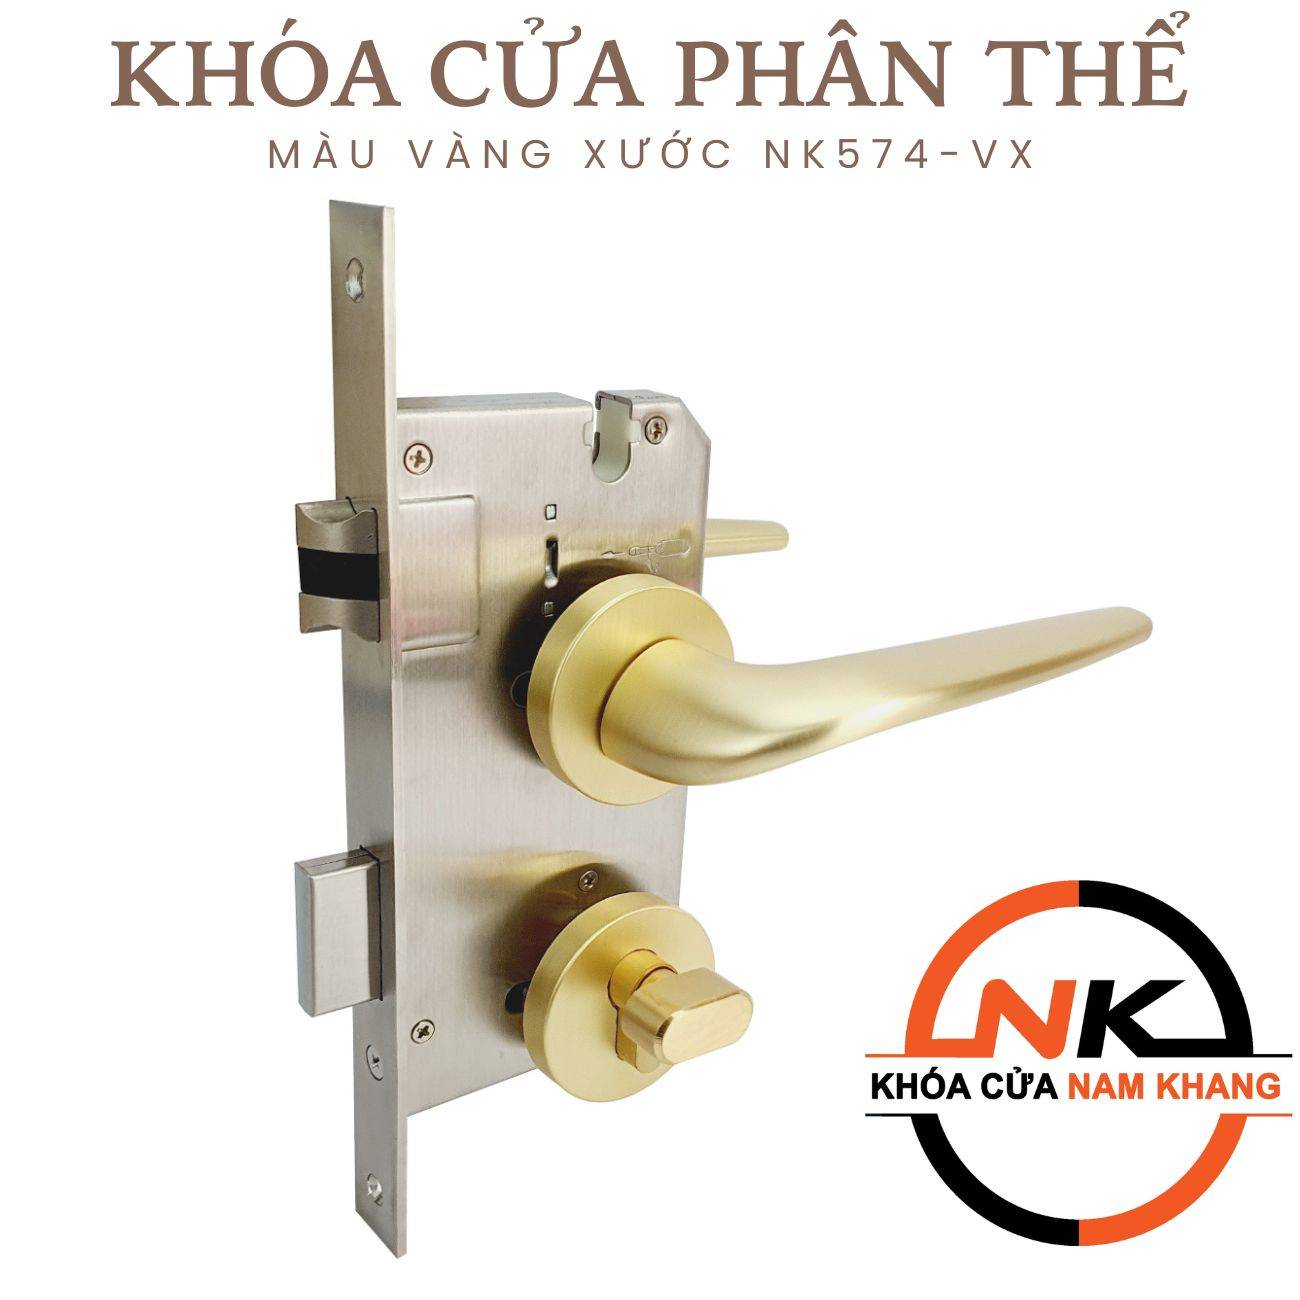 Khóa cửa phân thể màu vàng xước cho cửa phòng NK574-VX | F-Home NamKhang